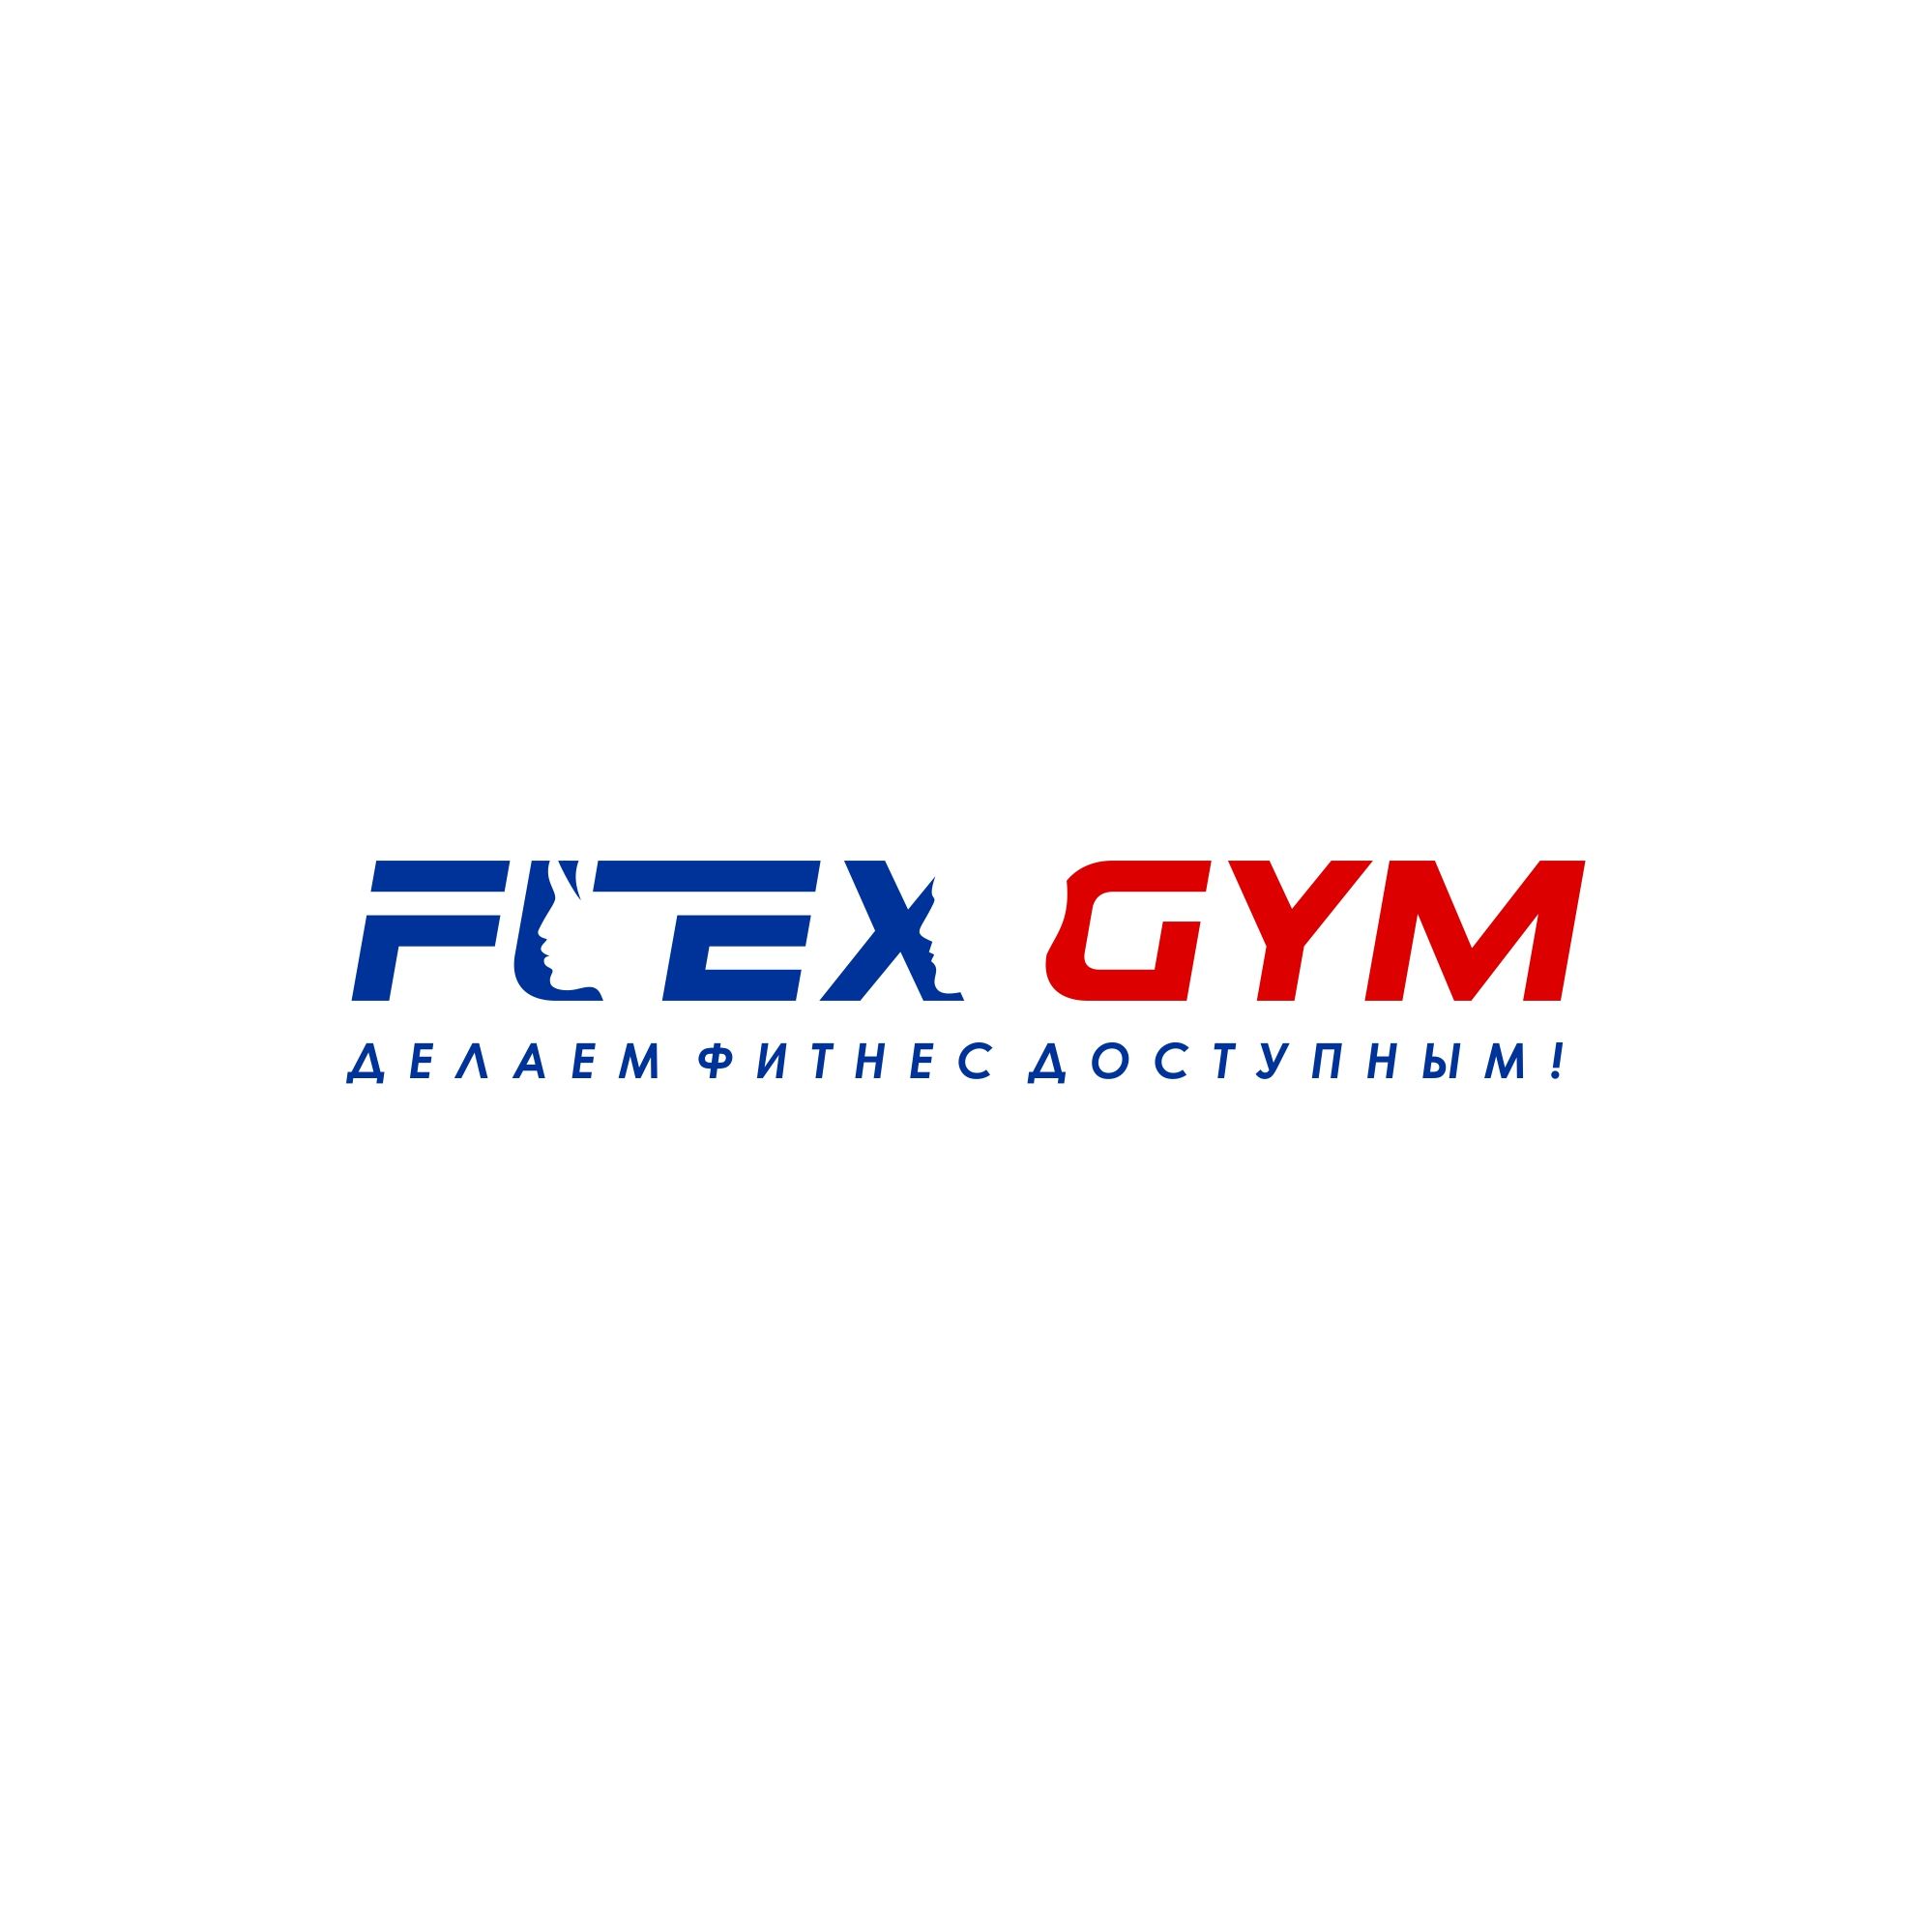 Логотип для FLEX GYM - дизайнер serz4868